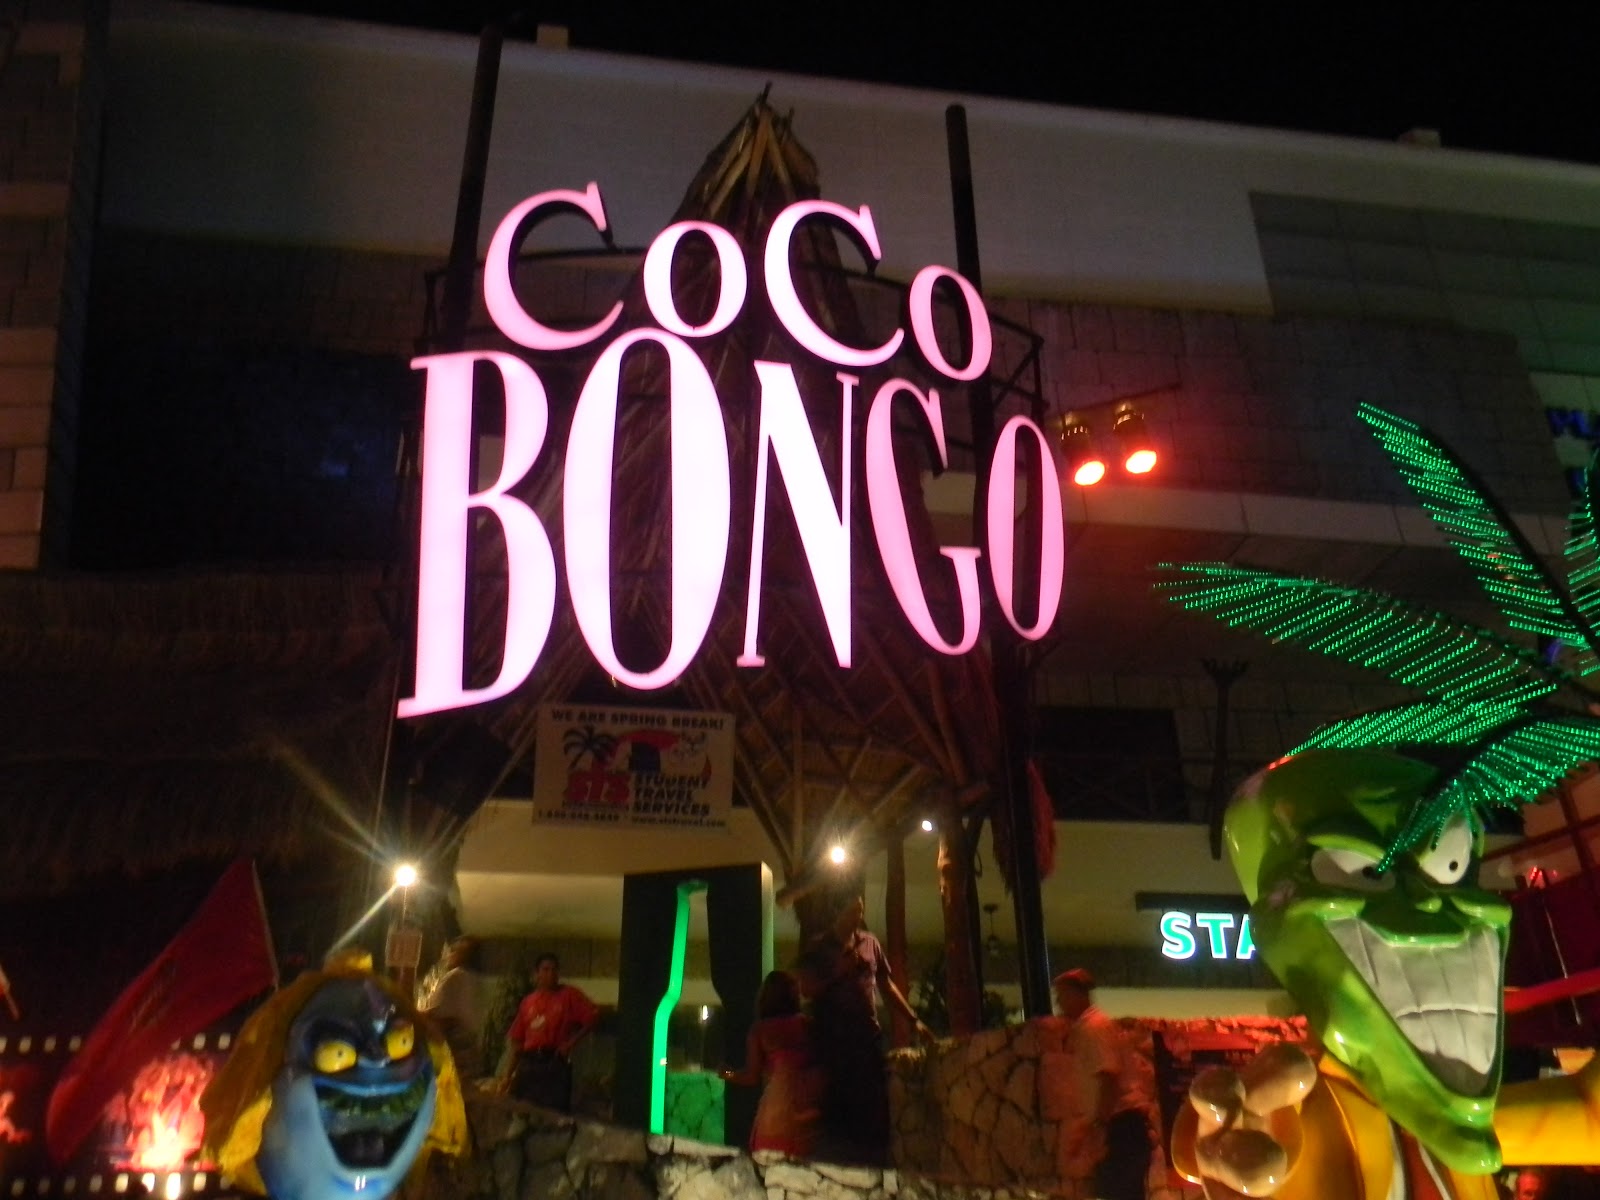 Coco bongo nudes